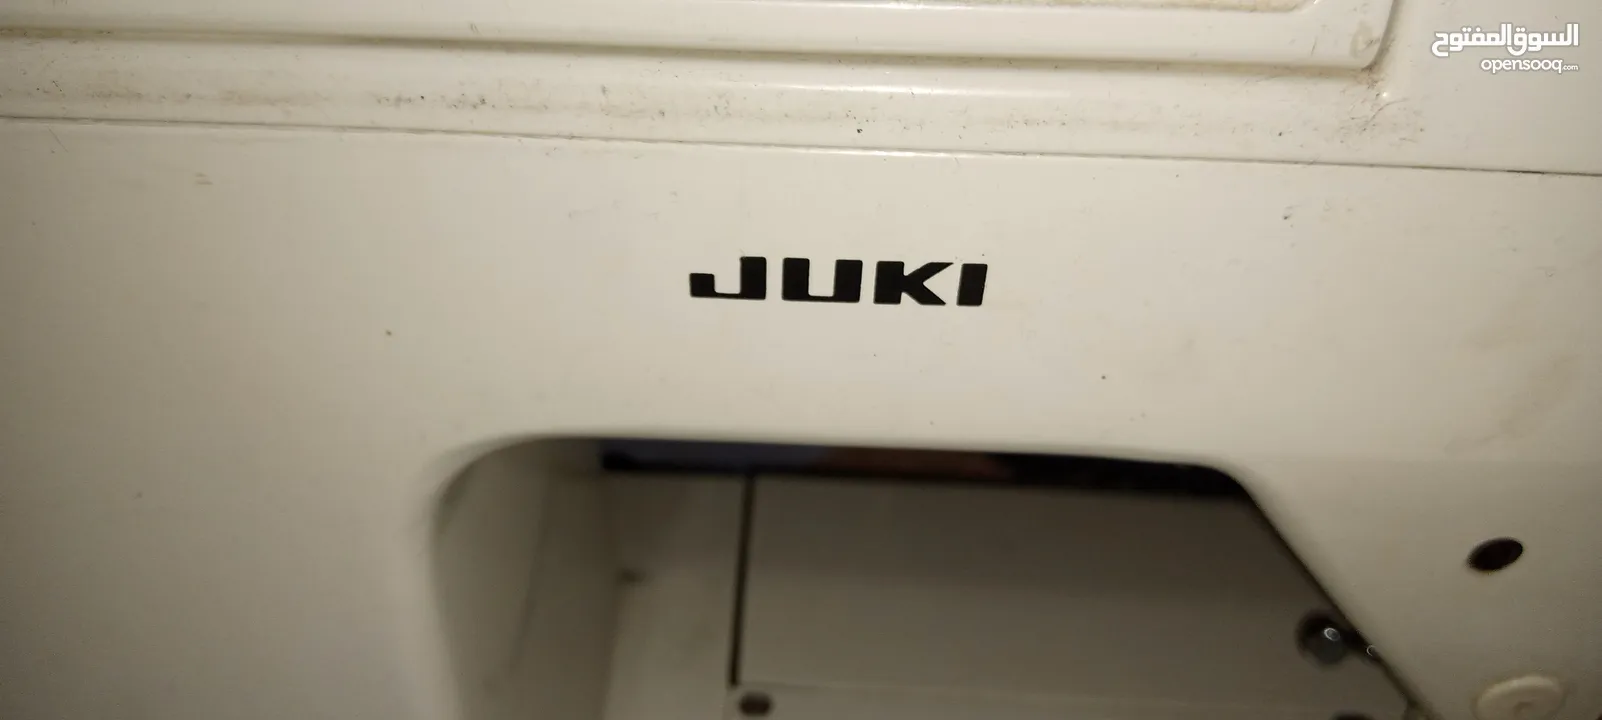 مكينة خياطة للبيع نوعية JUKl